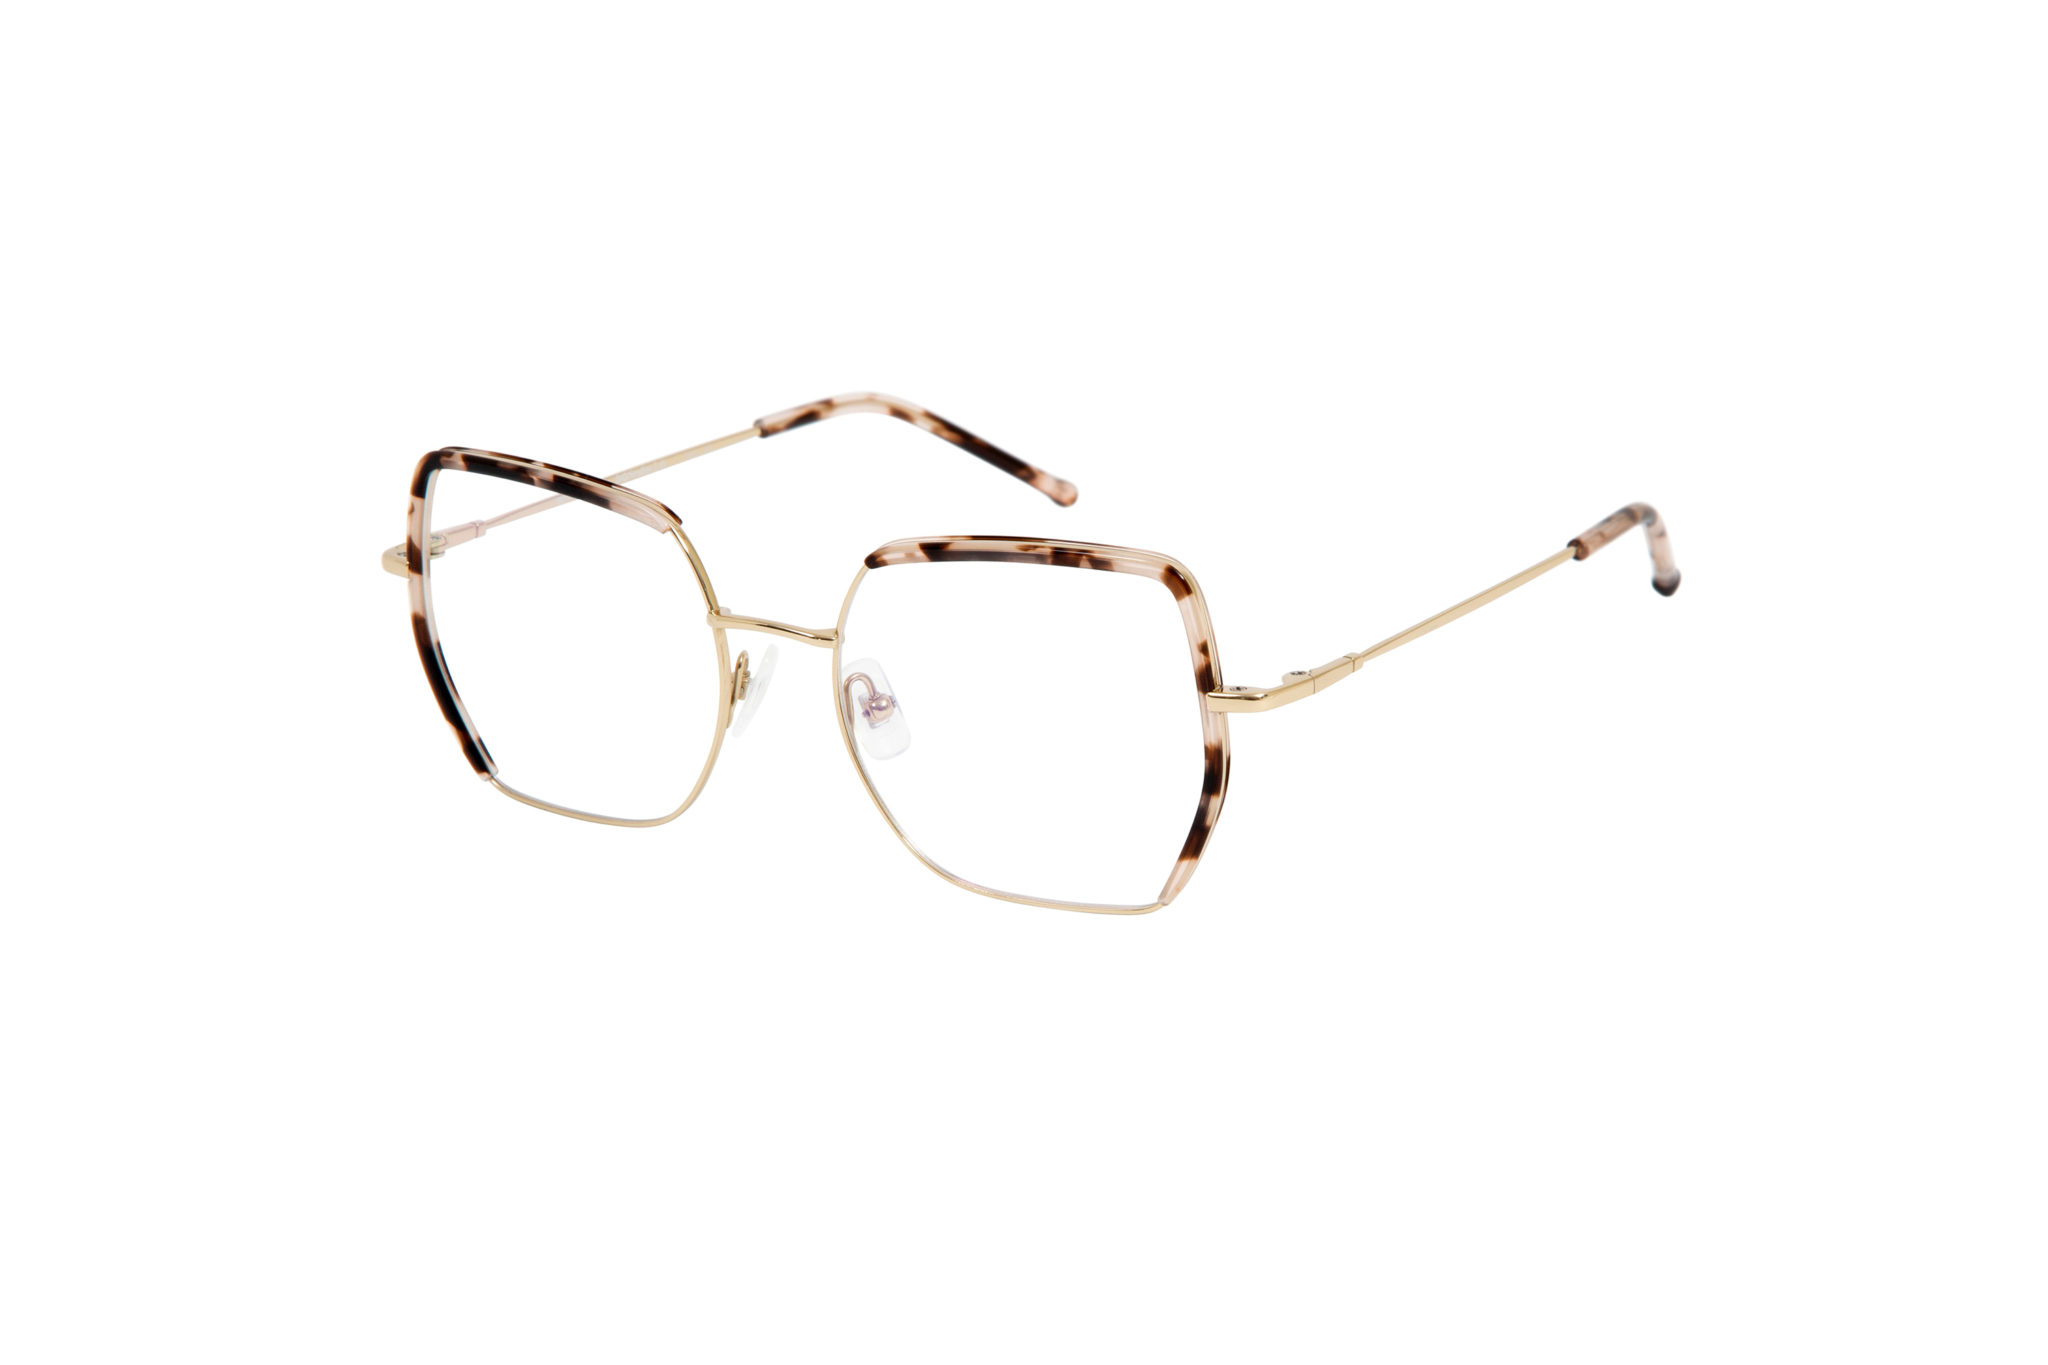 80902-minerva-squared-gold-optical-glasses-by-gigi-studios-3-2048x1365